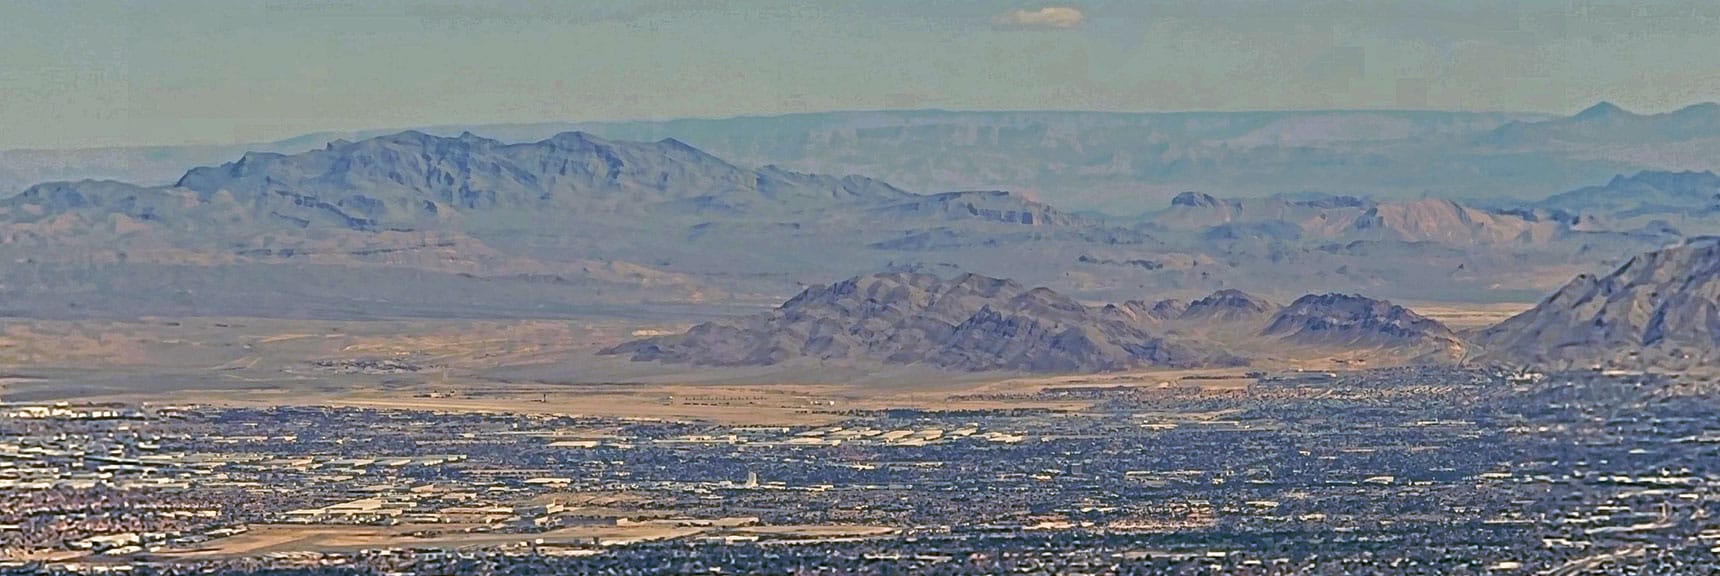 Muddy Mts. (left); Sunrise Mt. (center) Across Las Vegas Valley. | Mini Matterhorn Pinnacle | Wilson Ridge | Lovell Canyon, Nevada